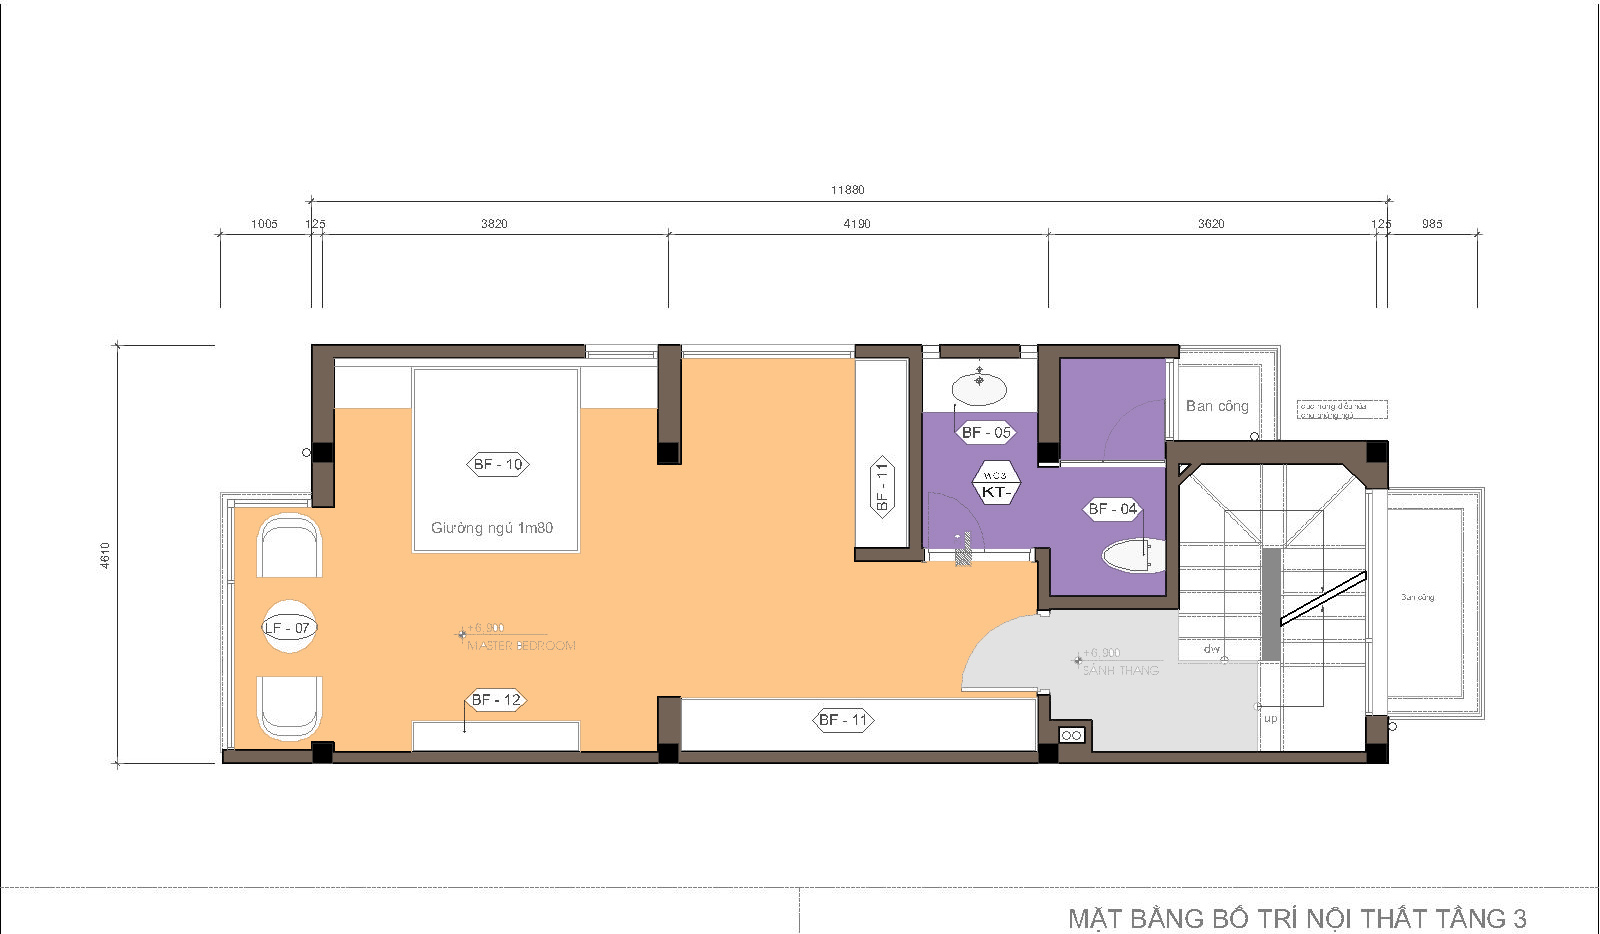 Nhà ống / nhà phố 3.6x12m - 5 tầng - 3 phòng ngủ - Mặt bằng tầng 3 bố trí chỉ 1 phòng ngủ, diện tích lớn hài hòa với kết cấu